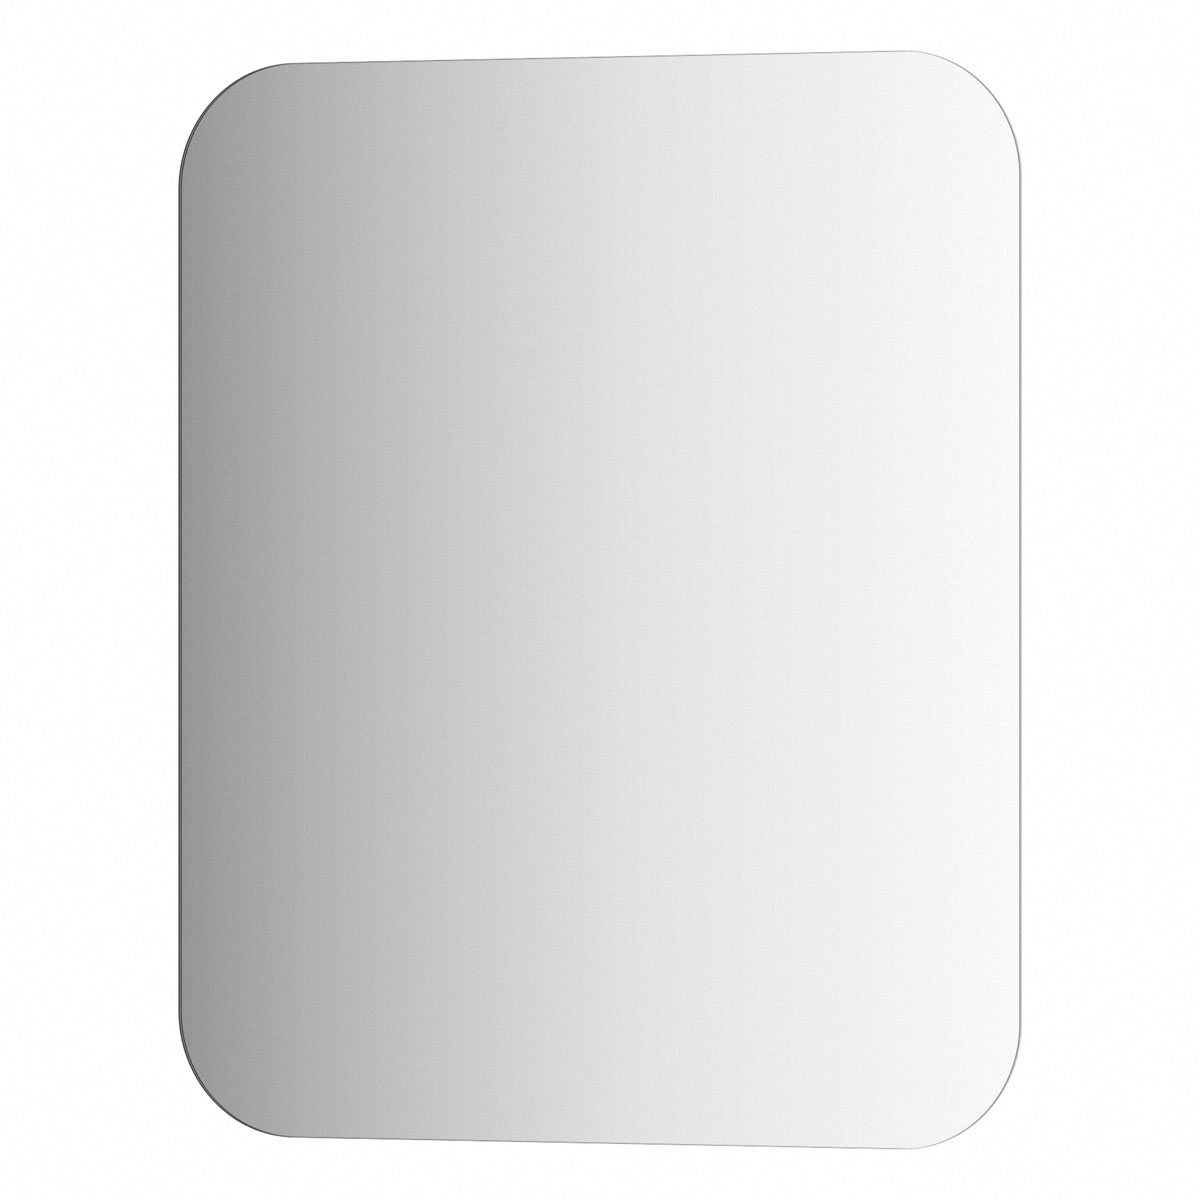 Зеркало настенное EDGE EVOFORM 50х60 см, SP 9874 настенное зеркало берже 24 105 белый ясень